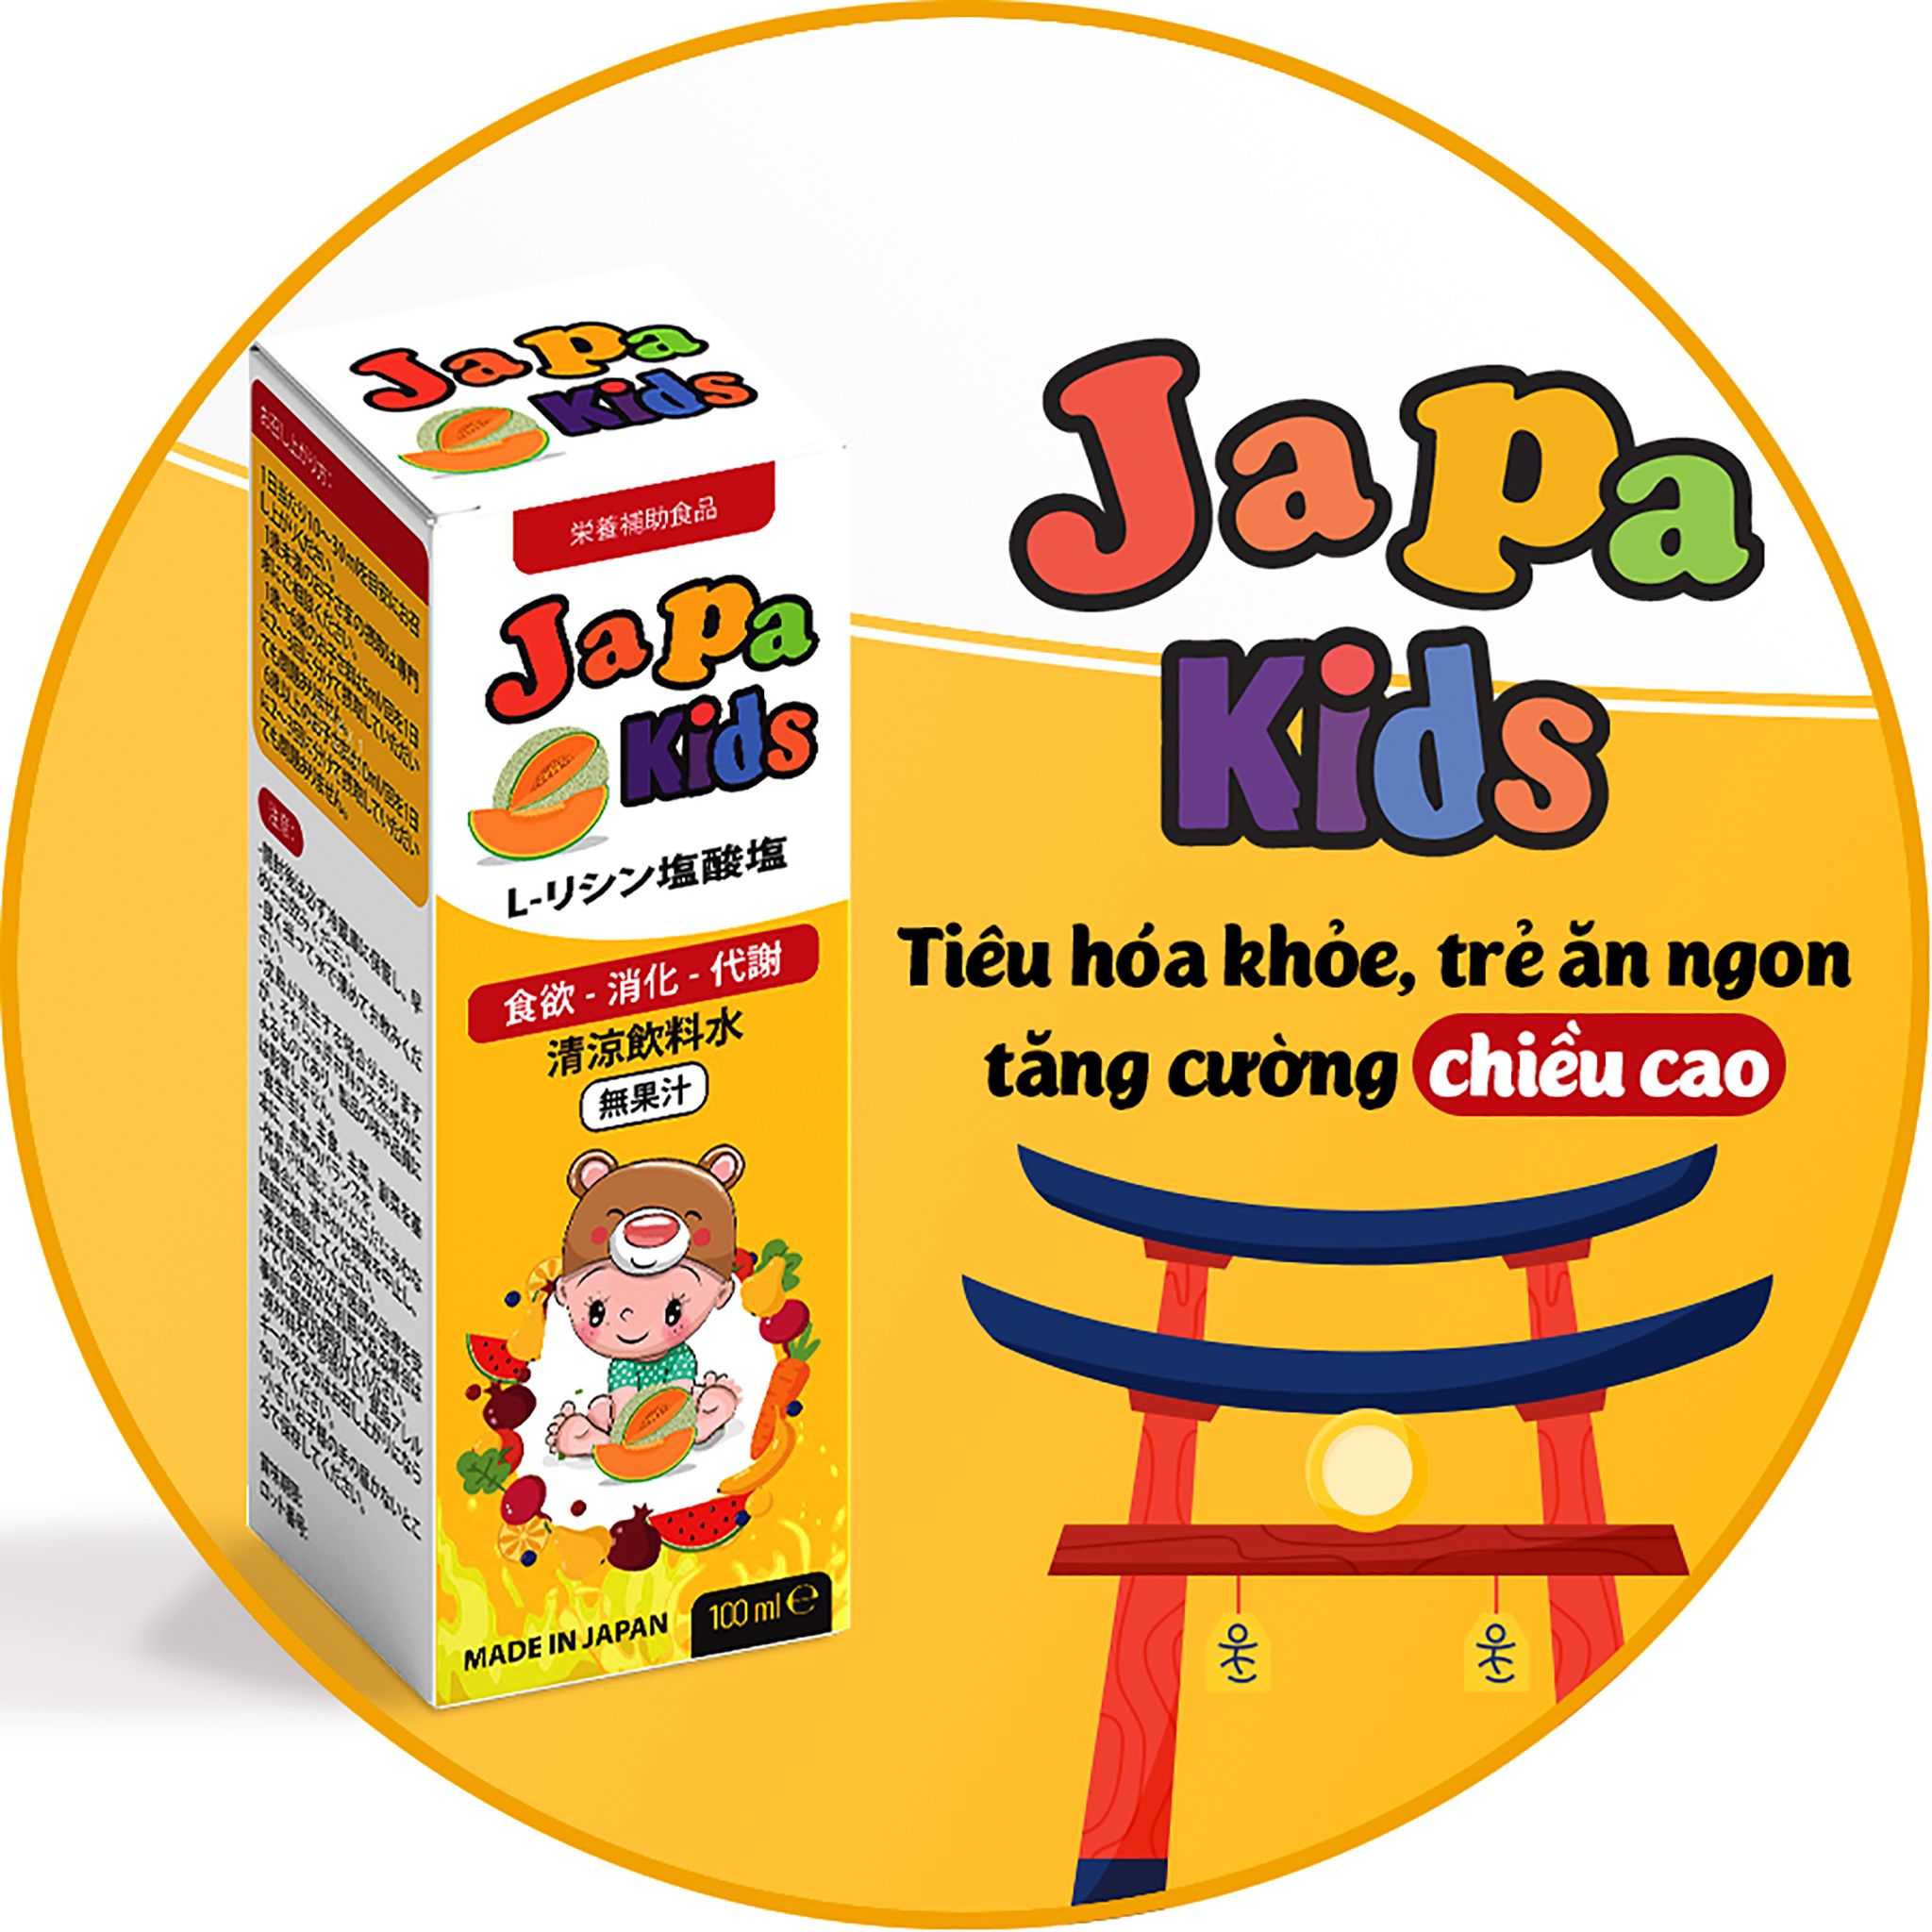  Japa Kids - Giúp tăng cường chức năng tiêu hóa và cải thiện khẩu vị cho trẻ 